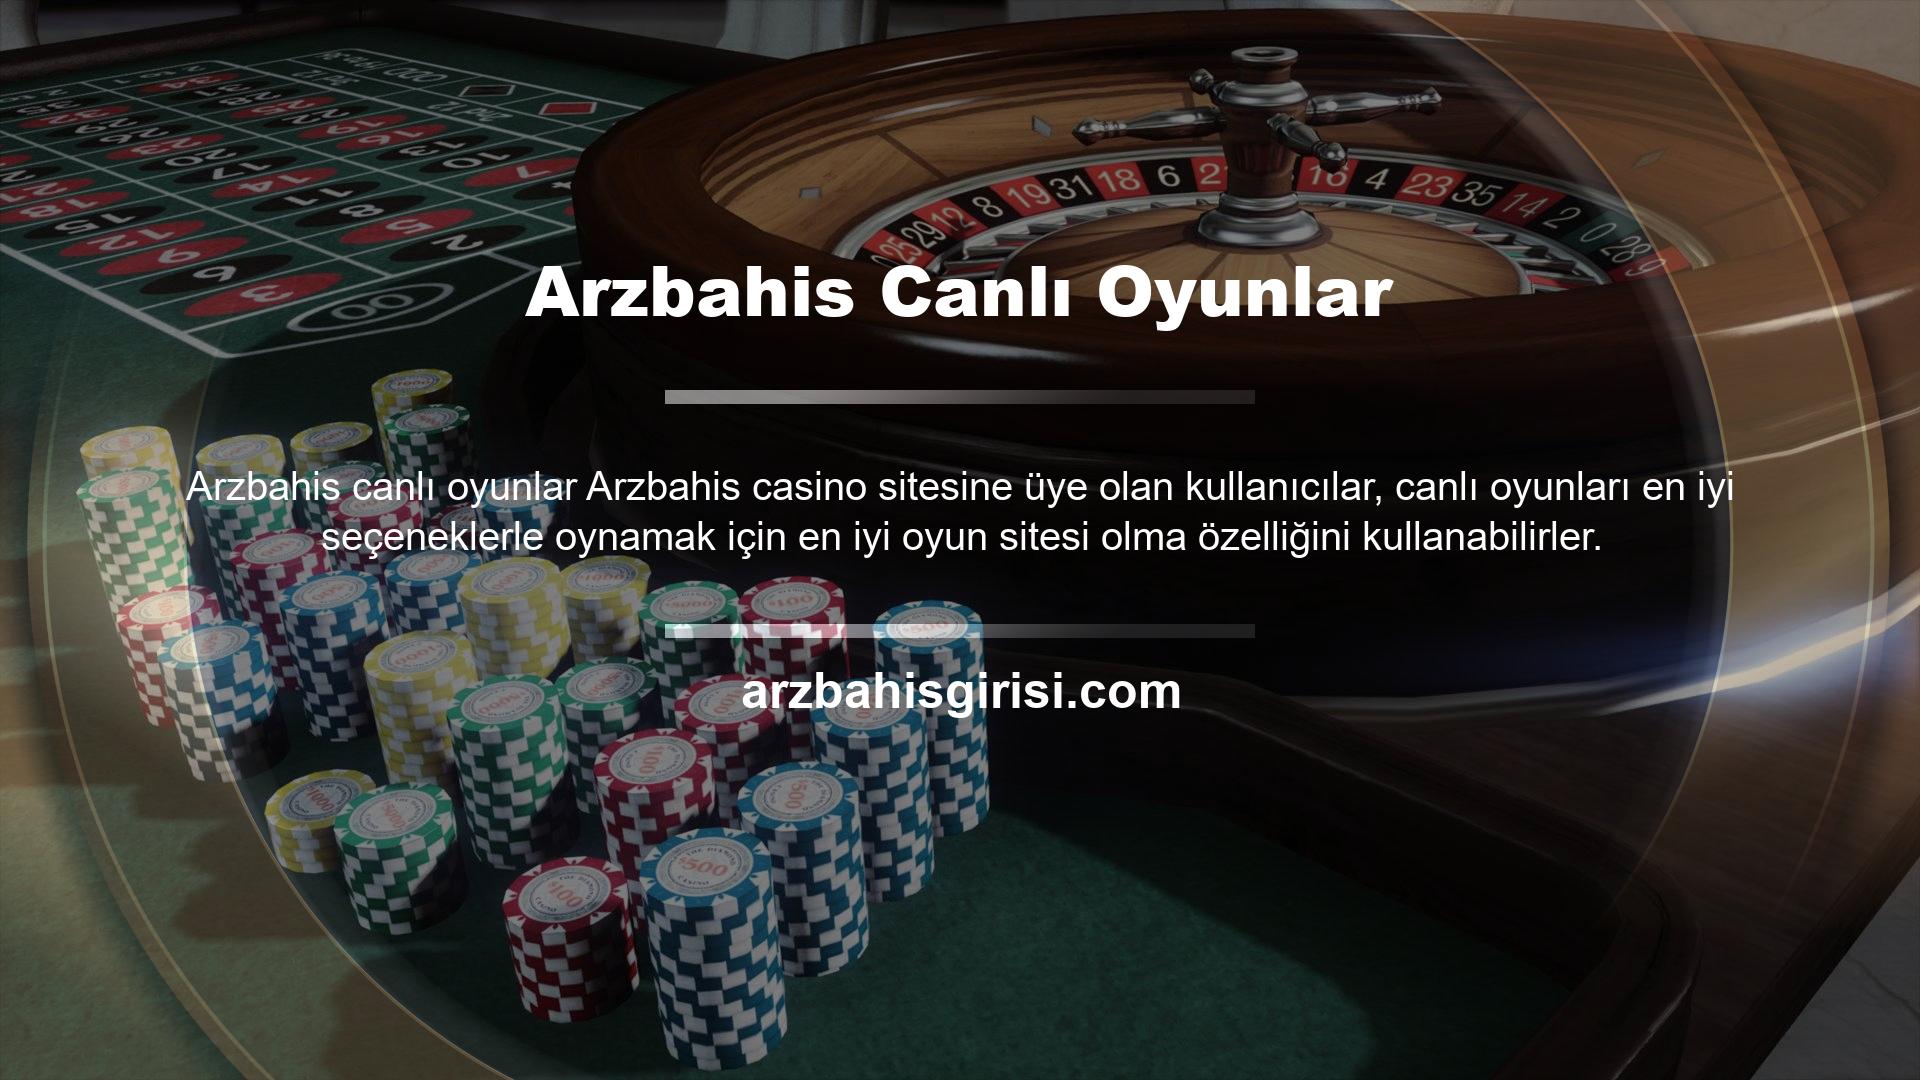 Arzbahis Canlı Casino oyunları için oluşturulan masalarda canlı krupiyeler bulunur